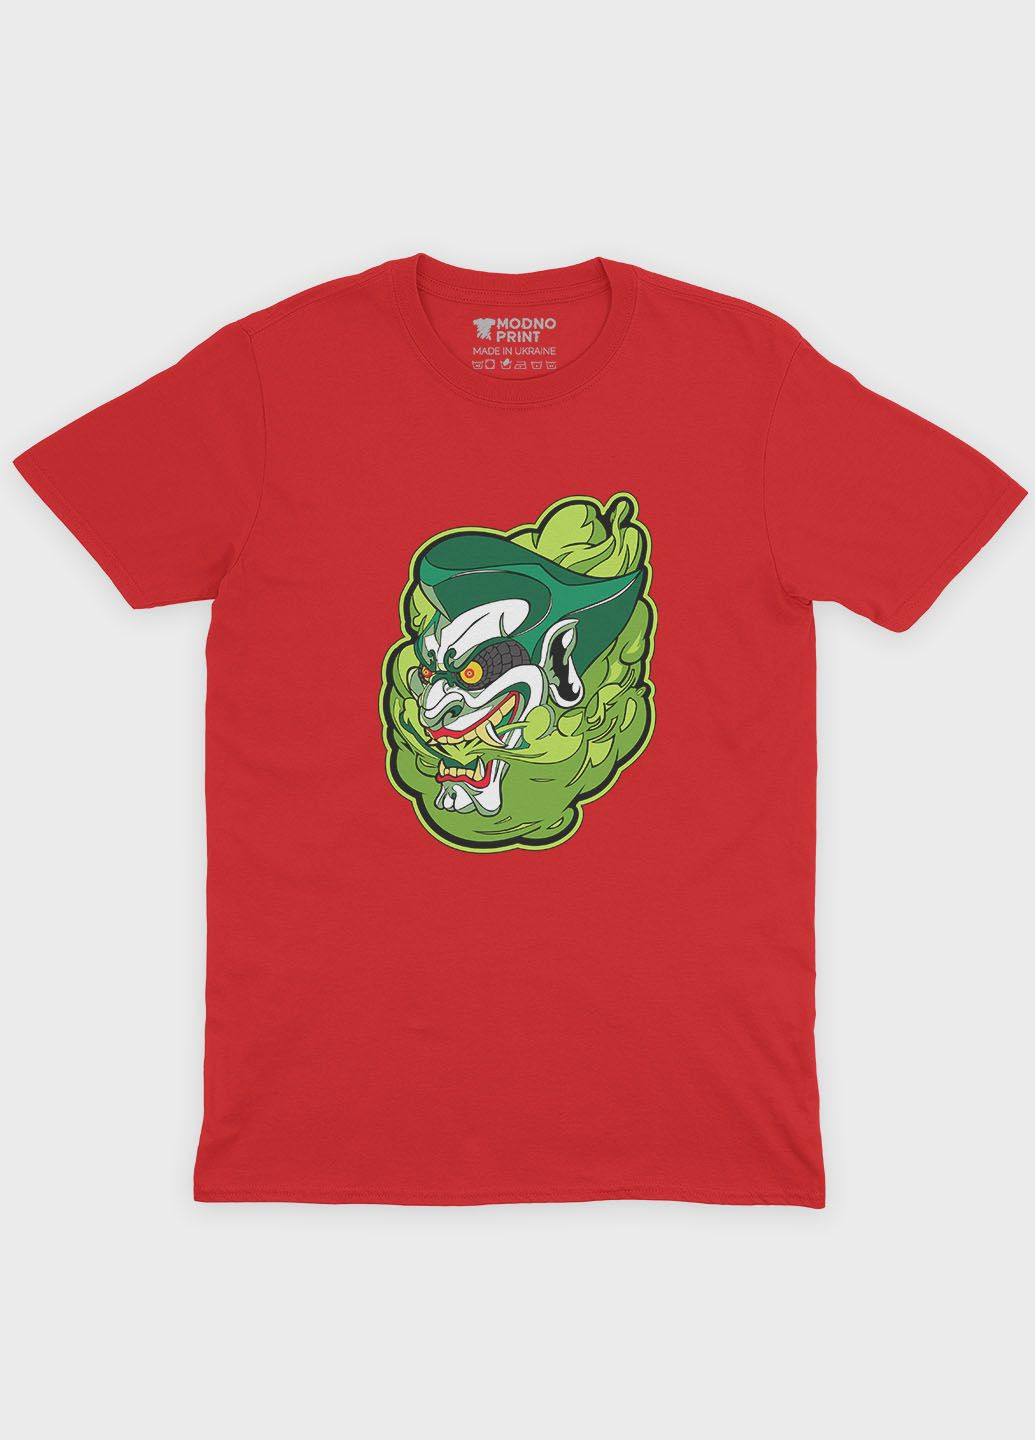 Красная демисезонная футболка для мальчика с принтом супервора - джокер (ts001-1-sre-006-005-022-b) Modno